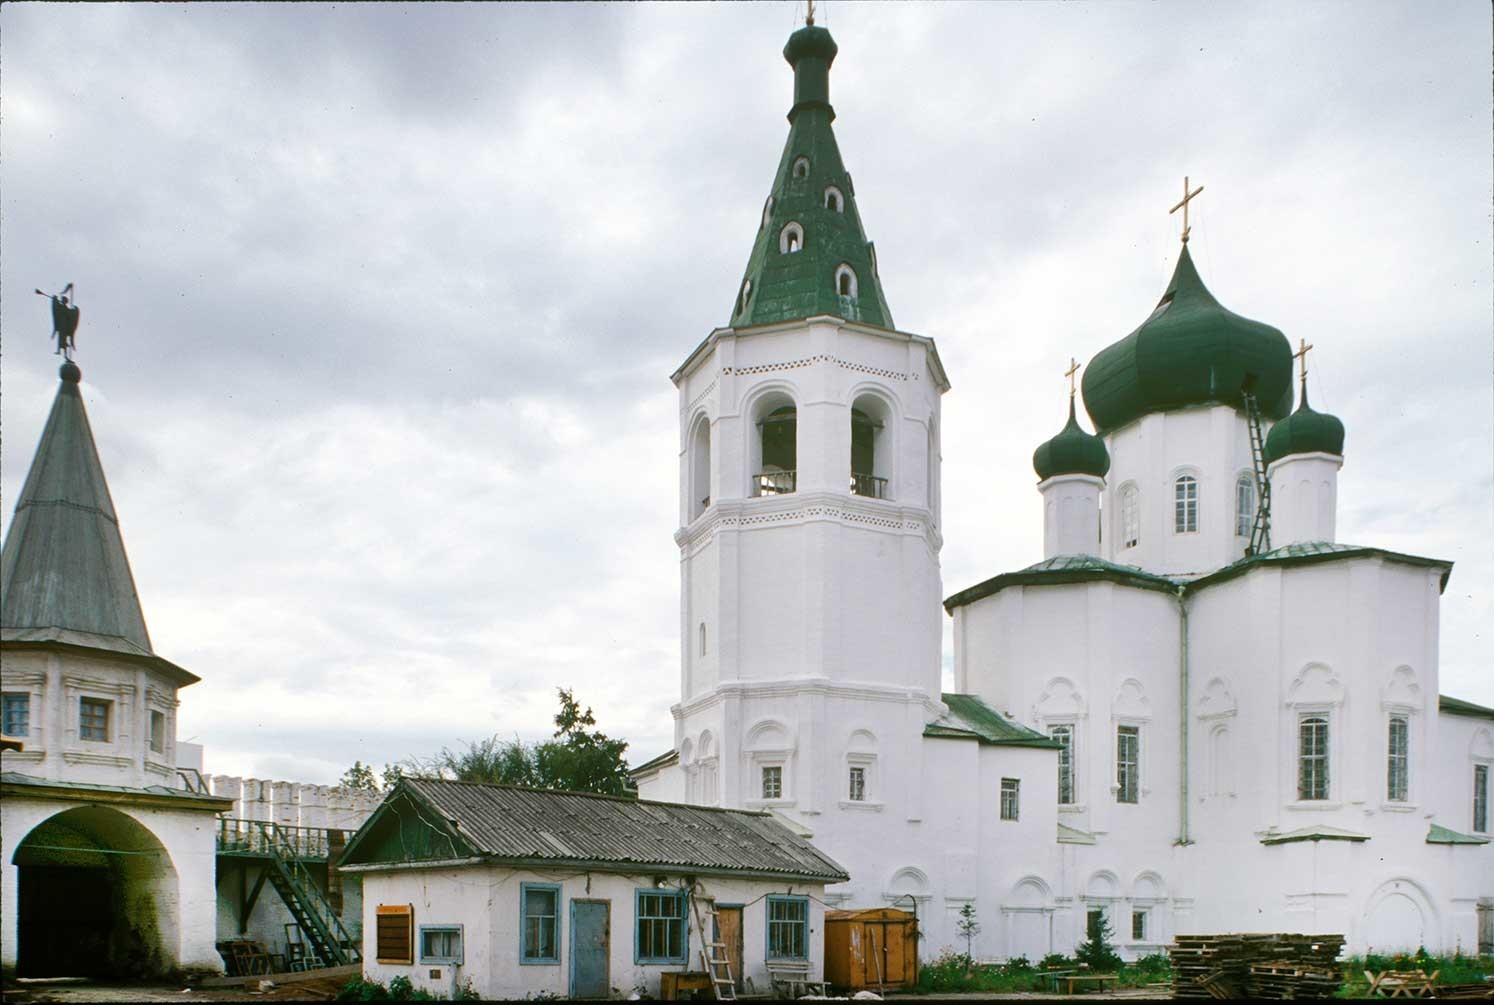 Monasterio de la Trinidad. De izquierda a derecha: Iglesia de los Santos Pedro y Pablo, campanario, portón sur y muro, Catedral de la Trinidad. Vista sureste. 29 de agosto de 1999.